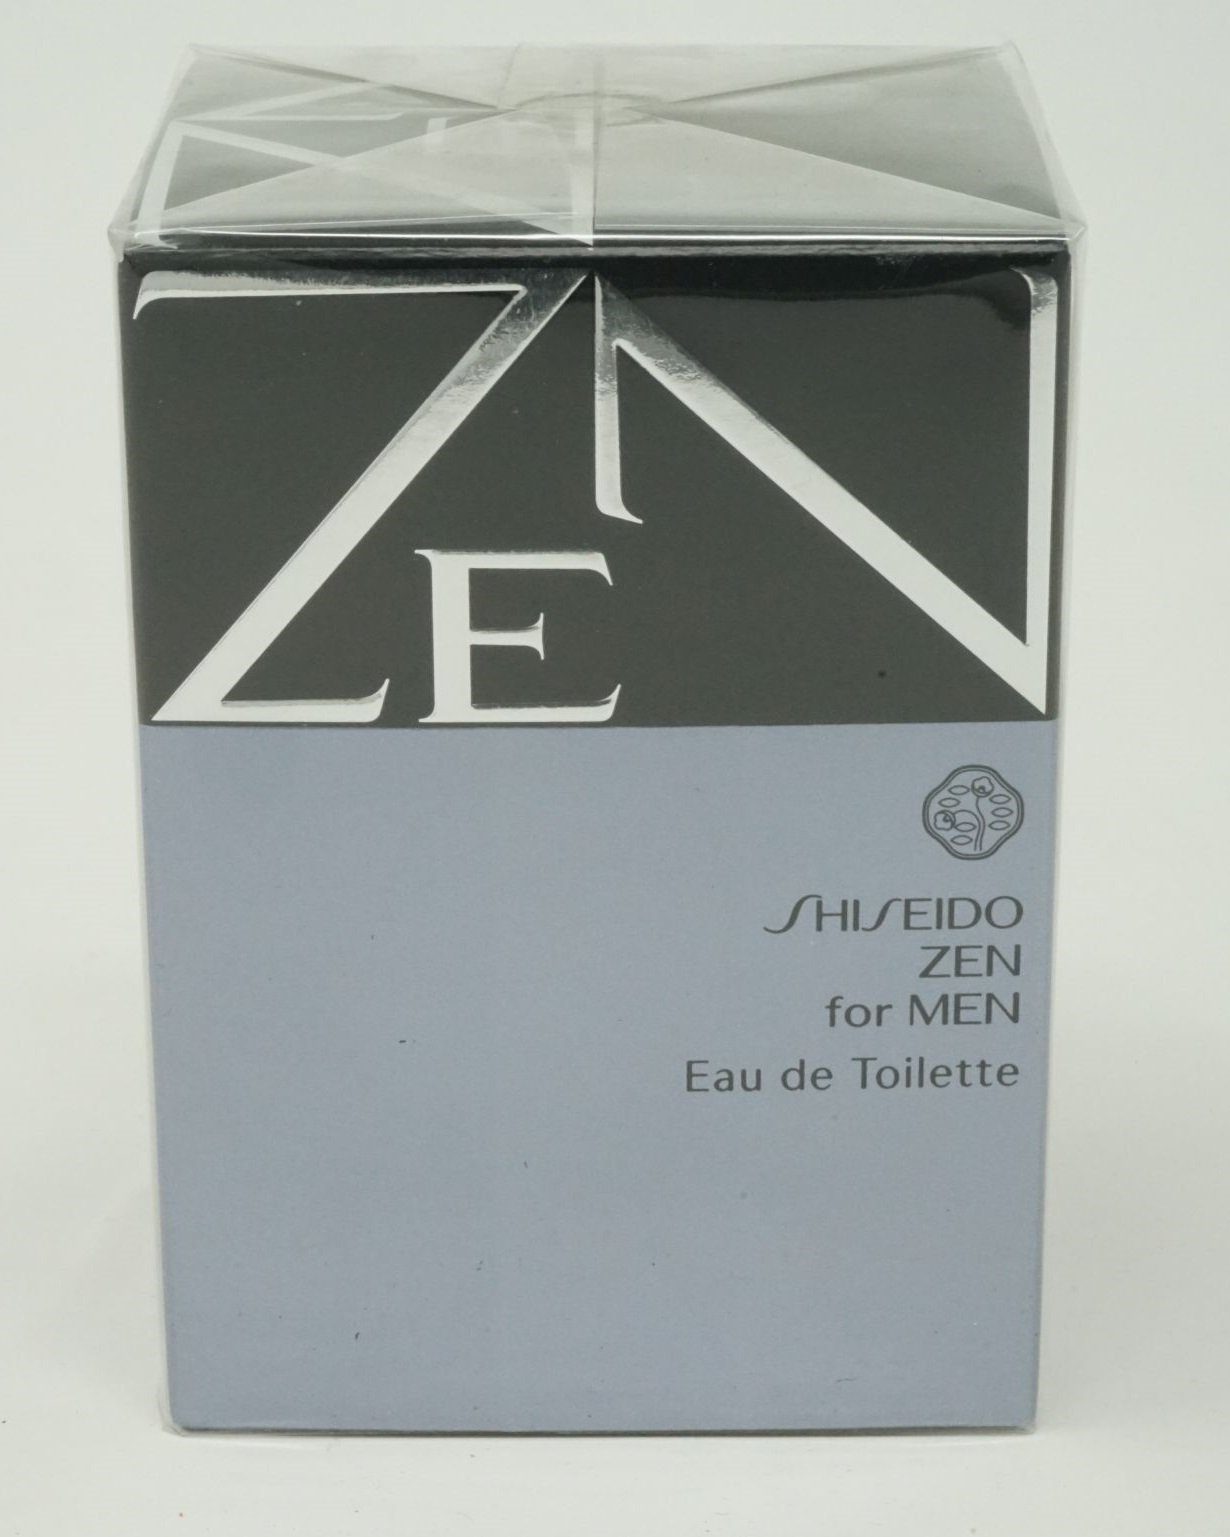 Toilette Shiseido Spray SHISEIDO 100ml Men de Eau Eau Zen Toilette For de